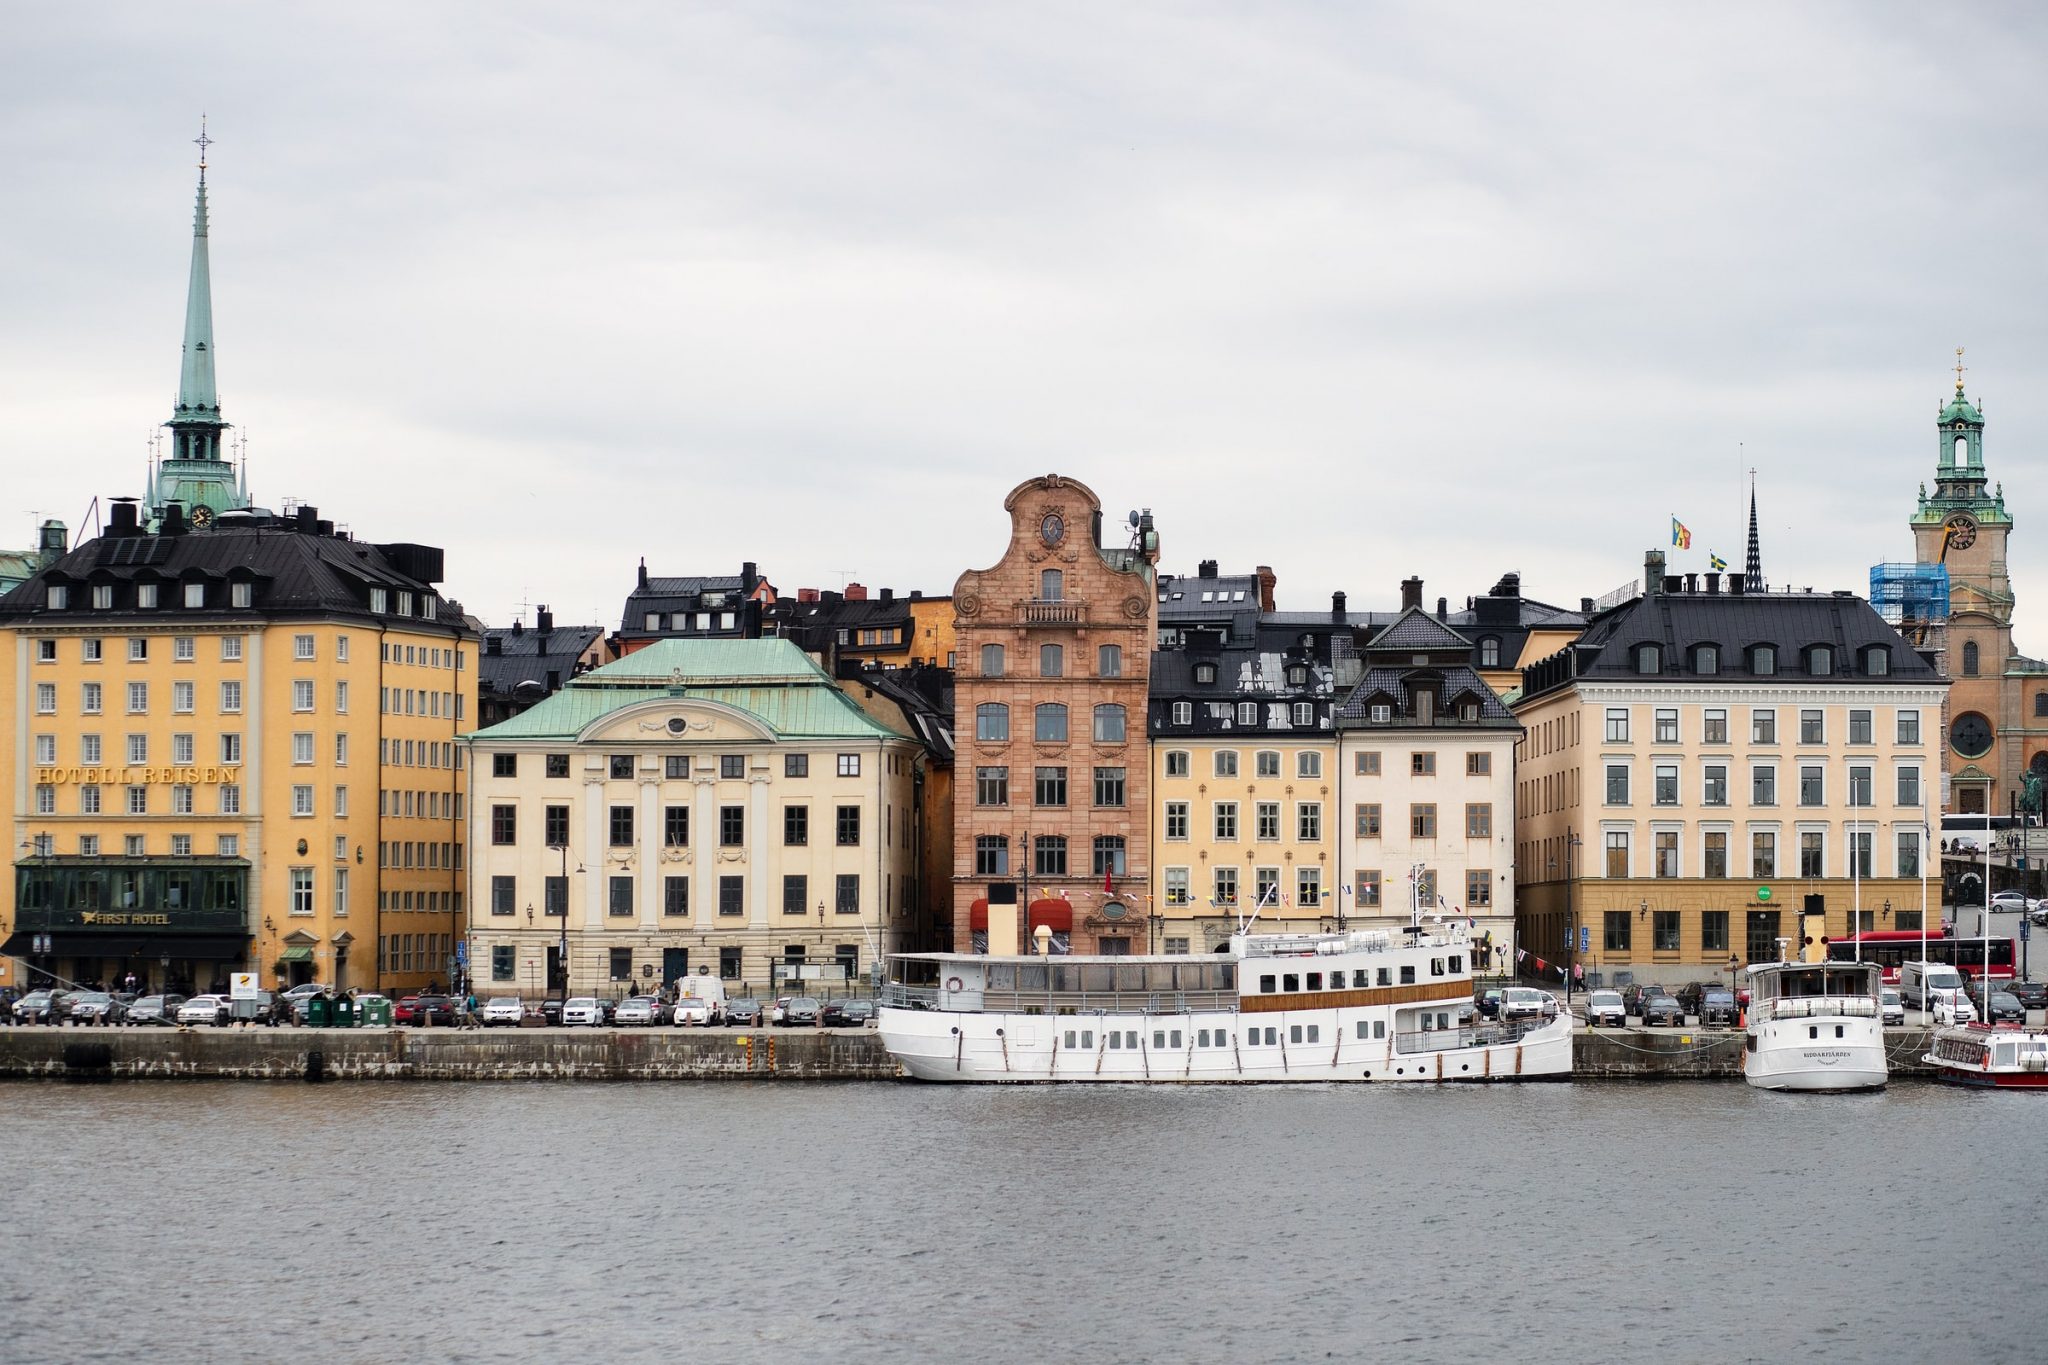 TripActions erbt ein schwedisches Reisebüro, um seine Präsenz in Europa zu stärken